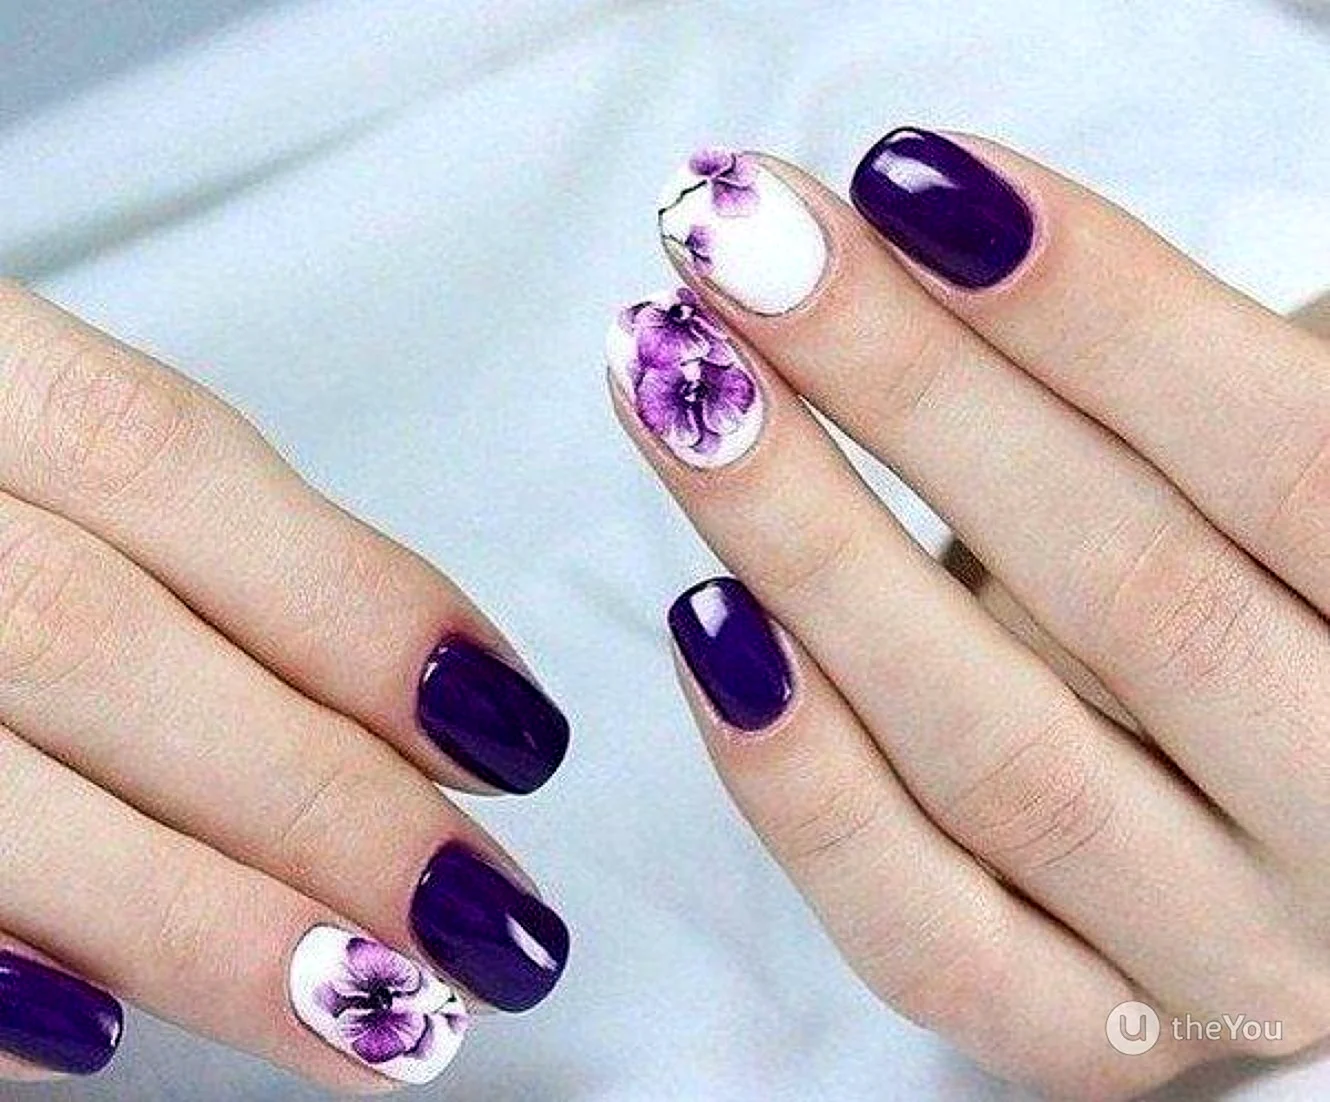 Ногти фиолетовые с белым